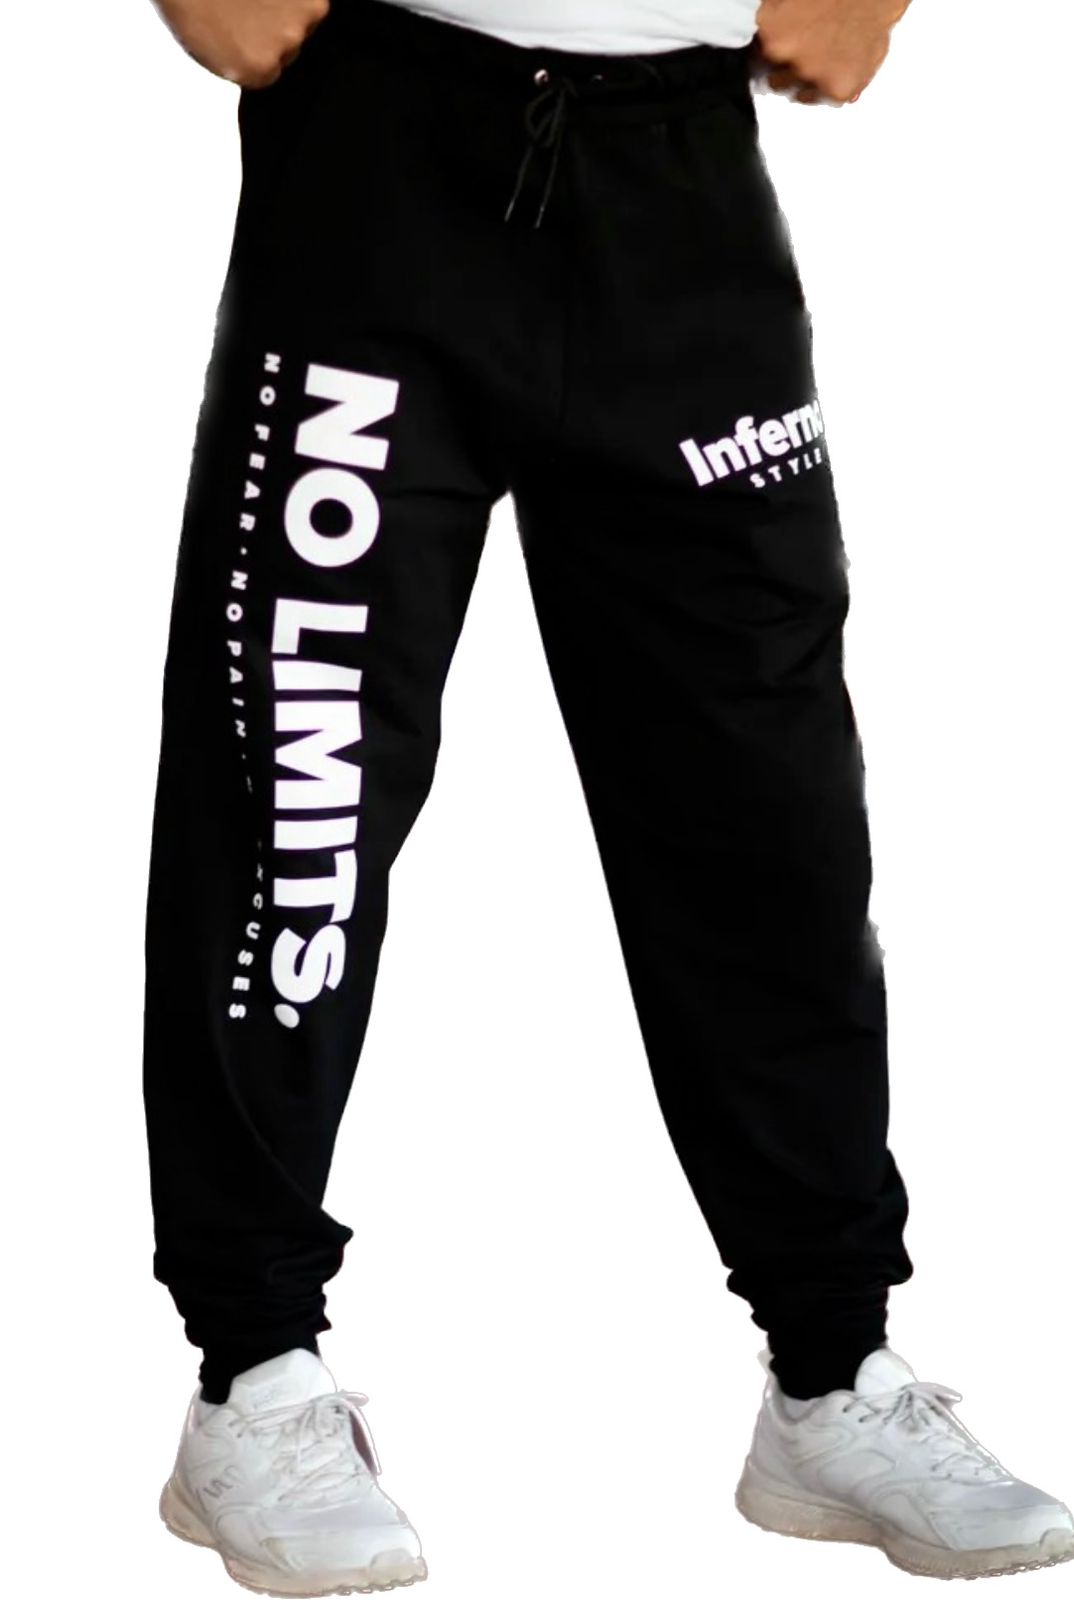 Спортивные брюки мужские INFERNO style Б-001-002-01 черные S